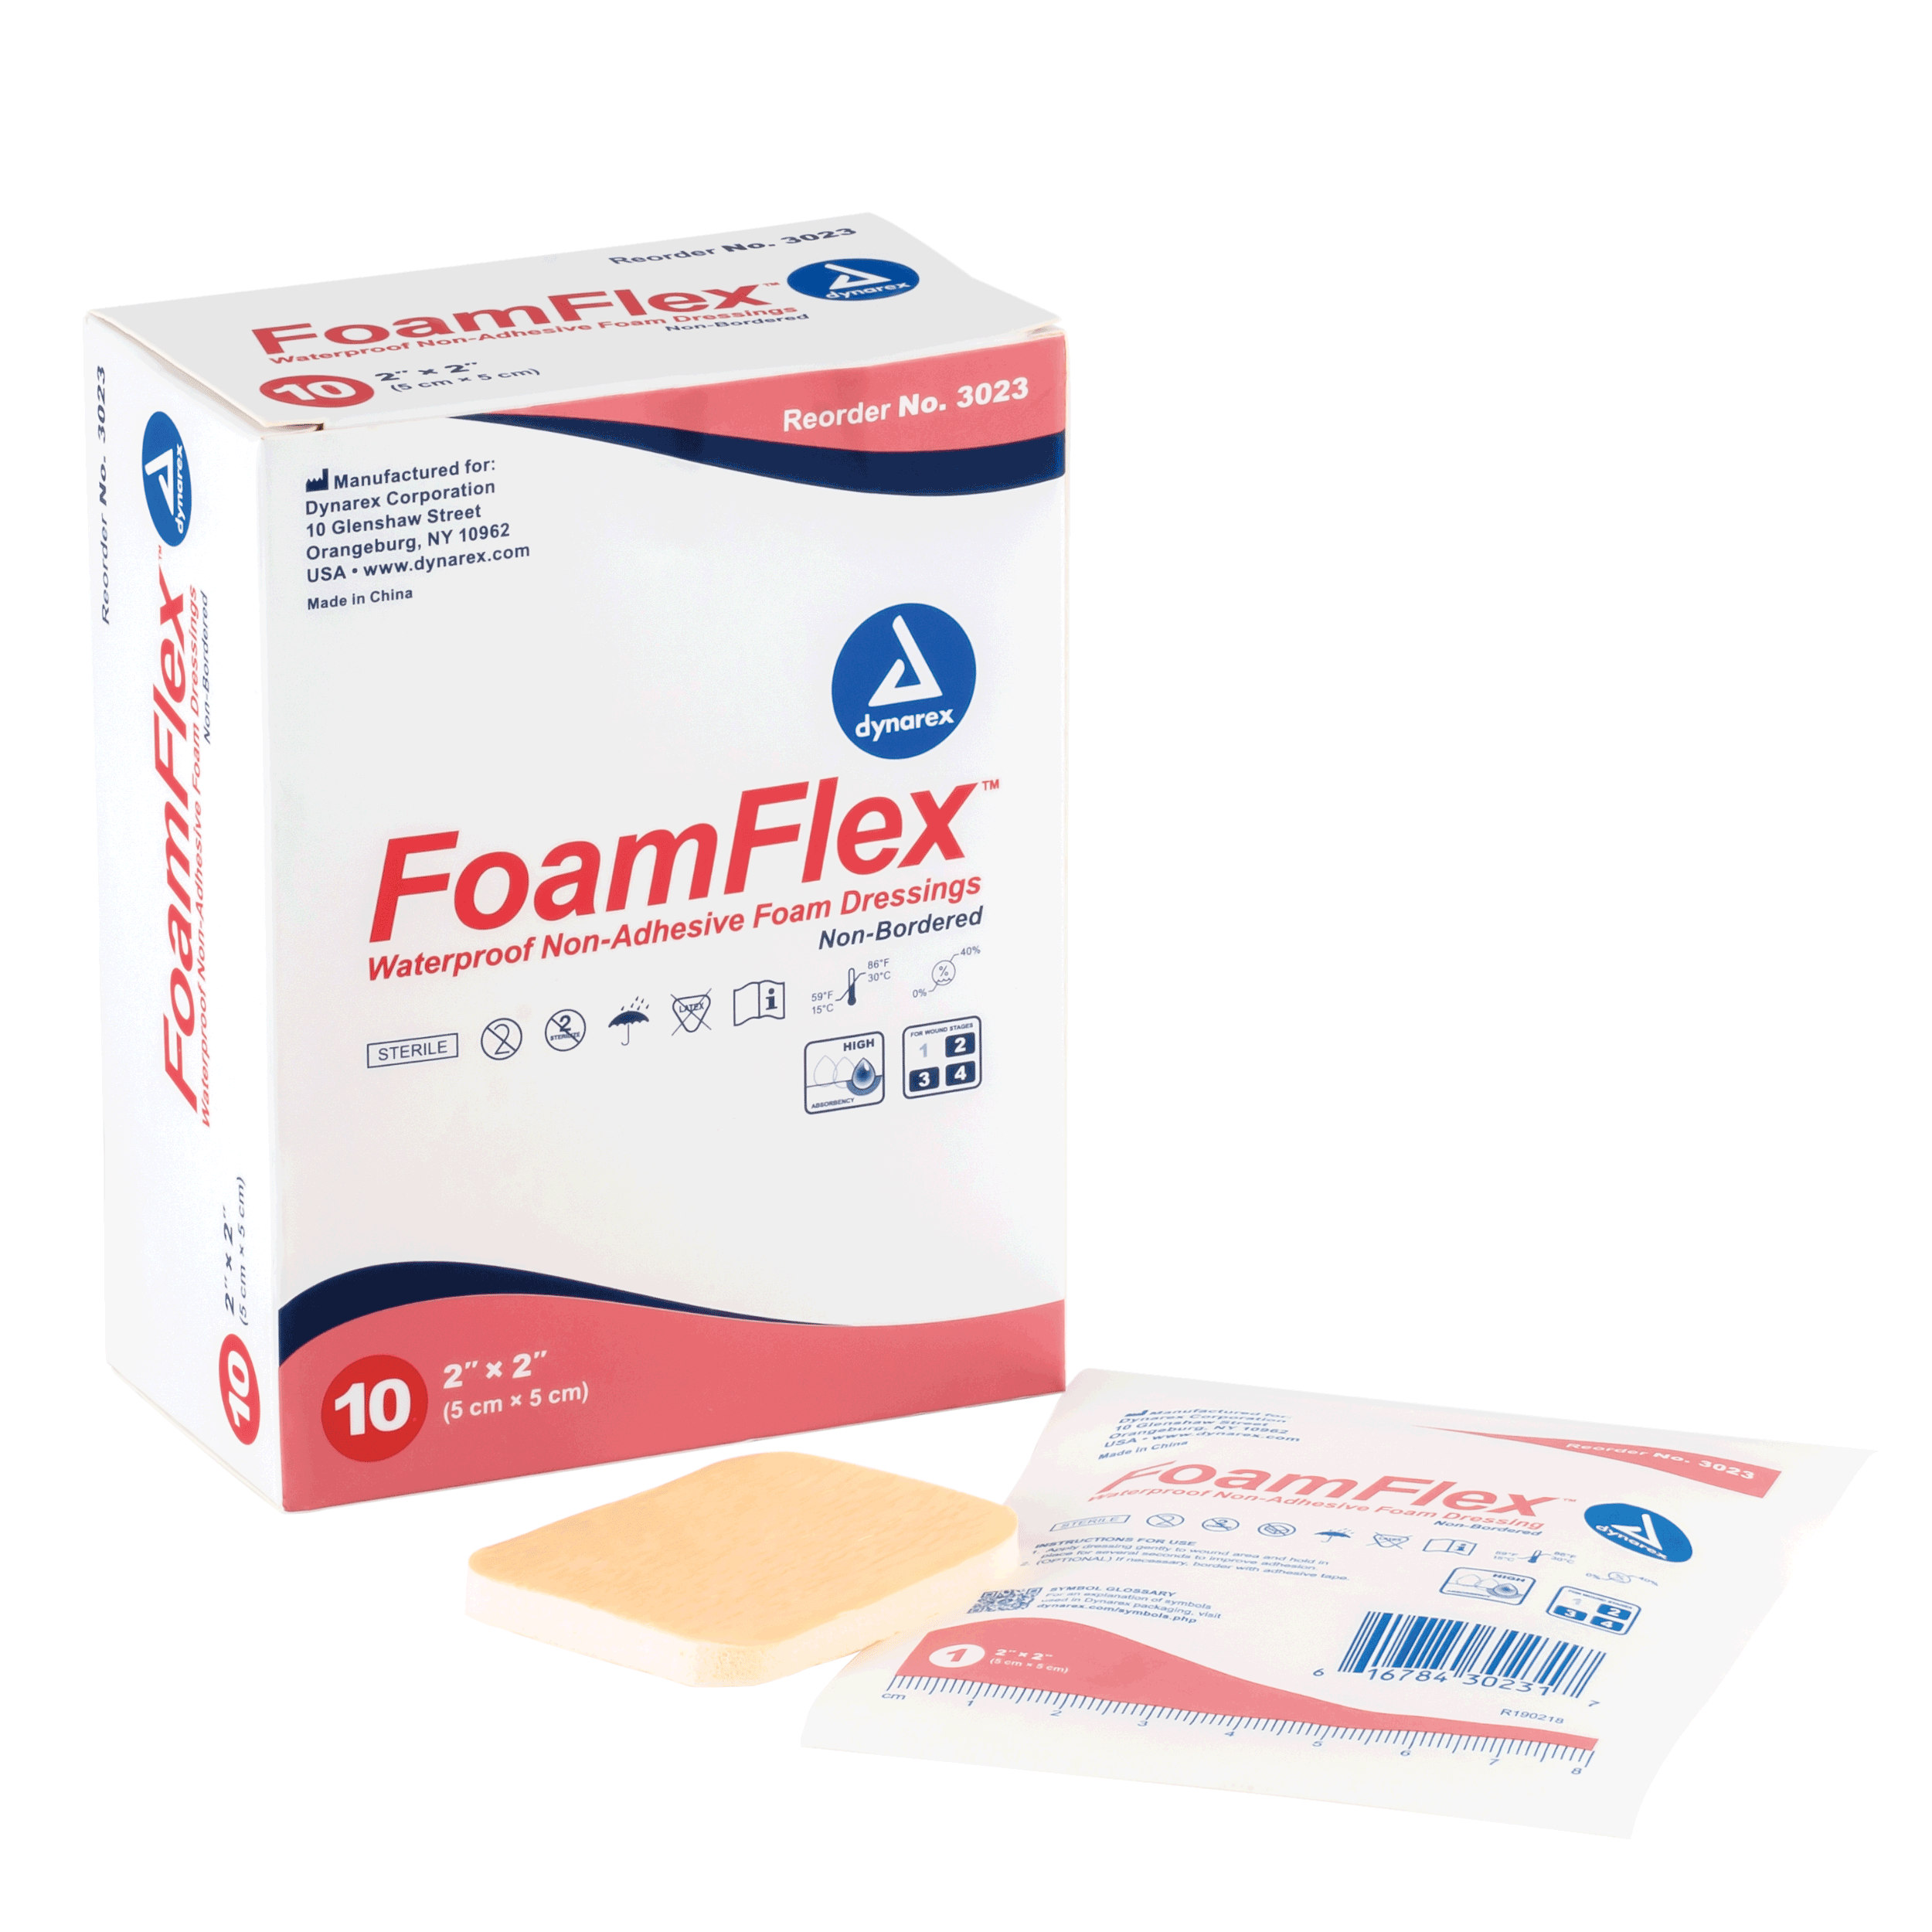 FoamFlex™ Non-Adhesive Waterproof Foam Dressing - 2